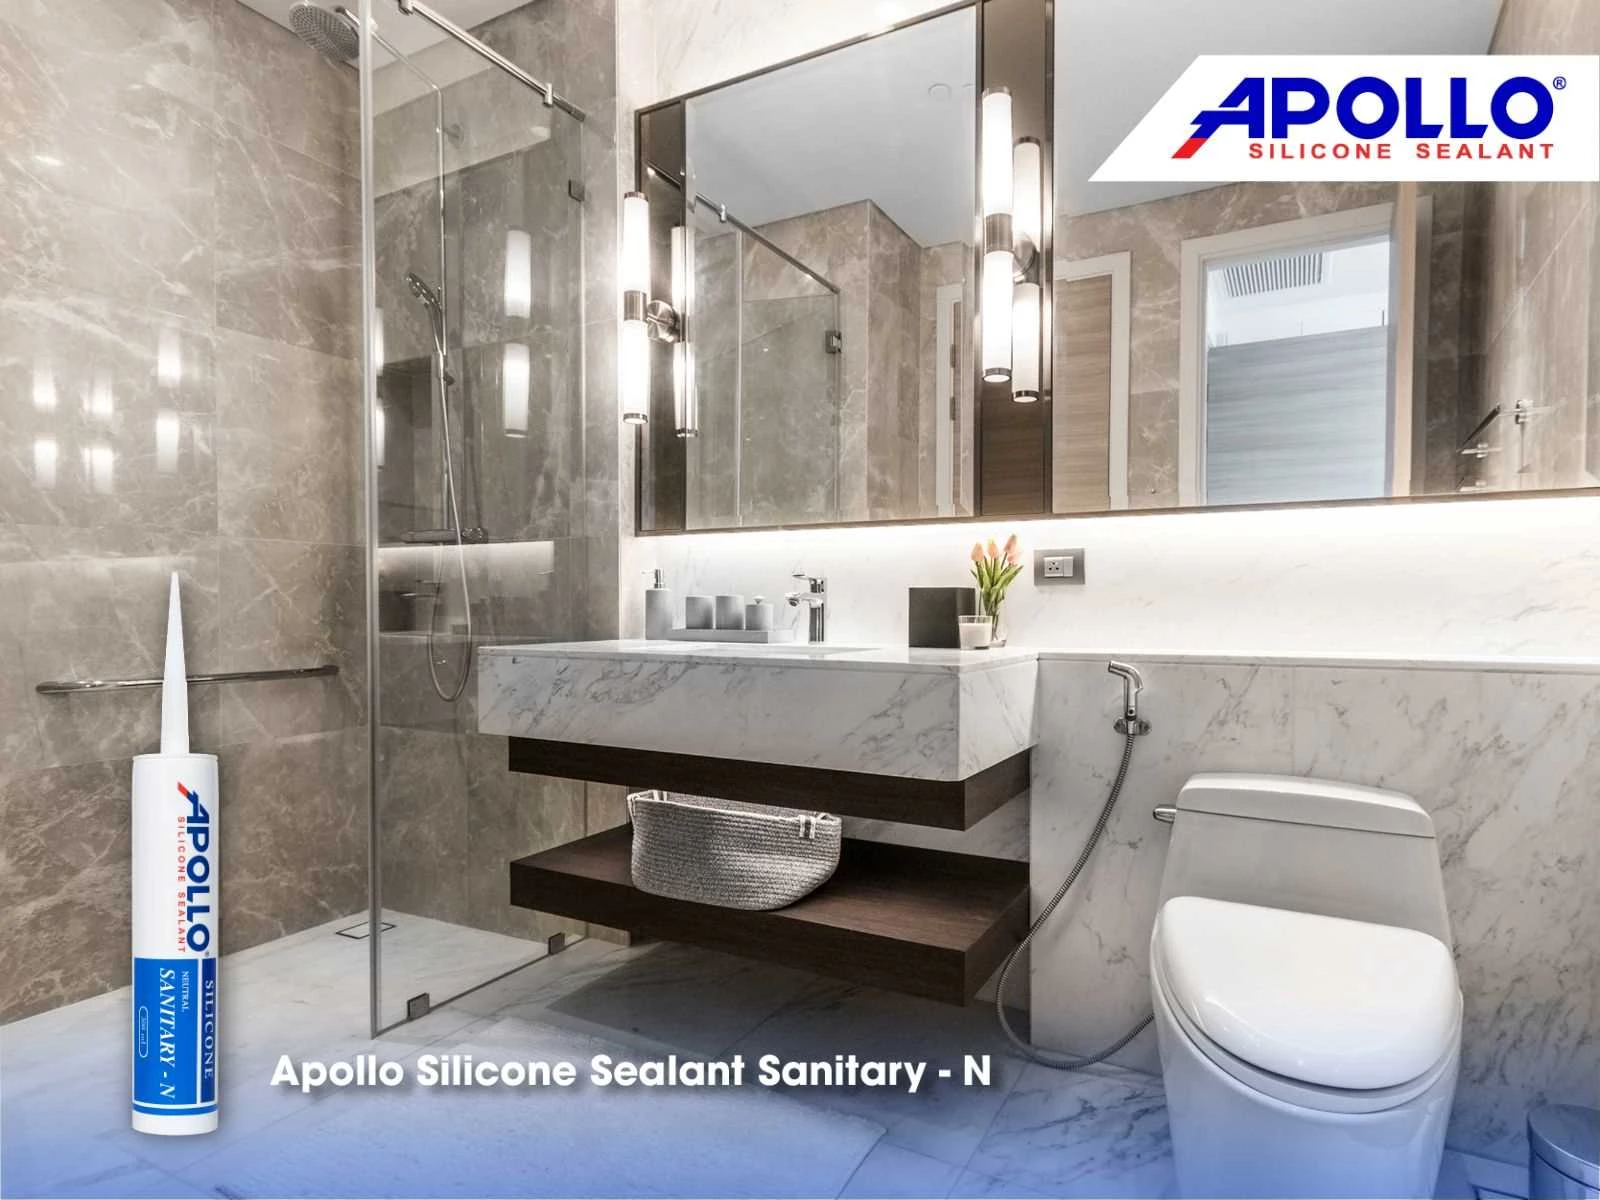 Apollo Sanitary - N là giải pháp chống nấm mốc chuyên dụng cho phòng tắm, nhà vệ sinh